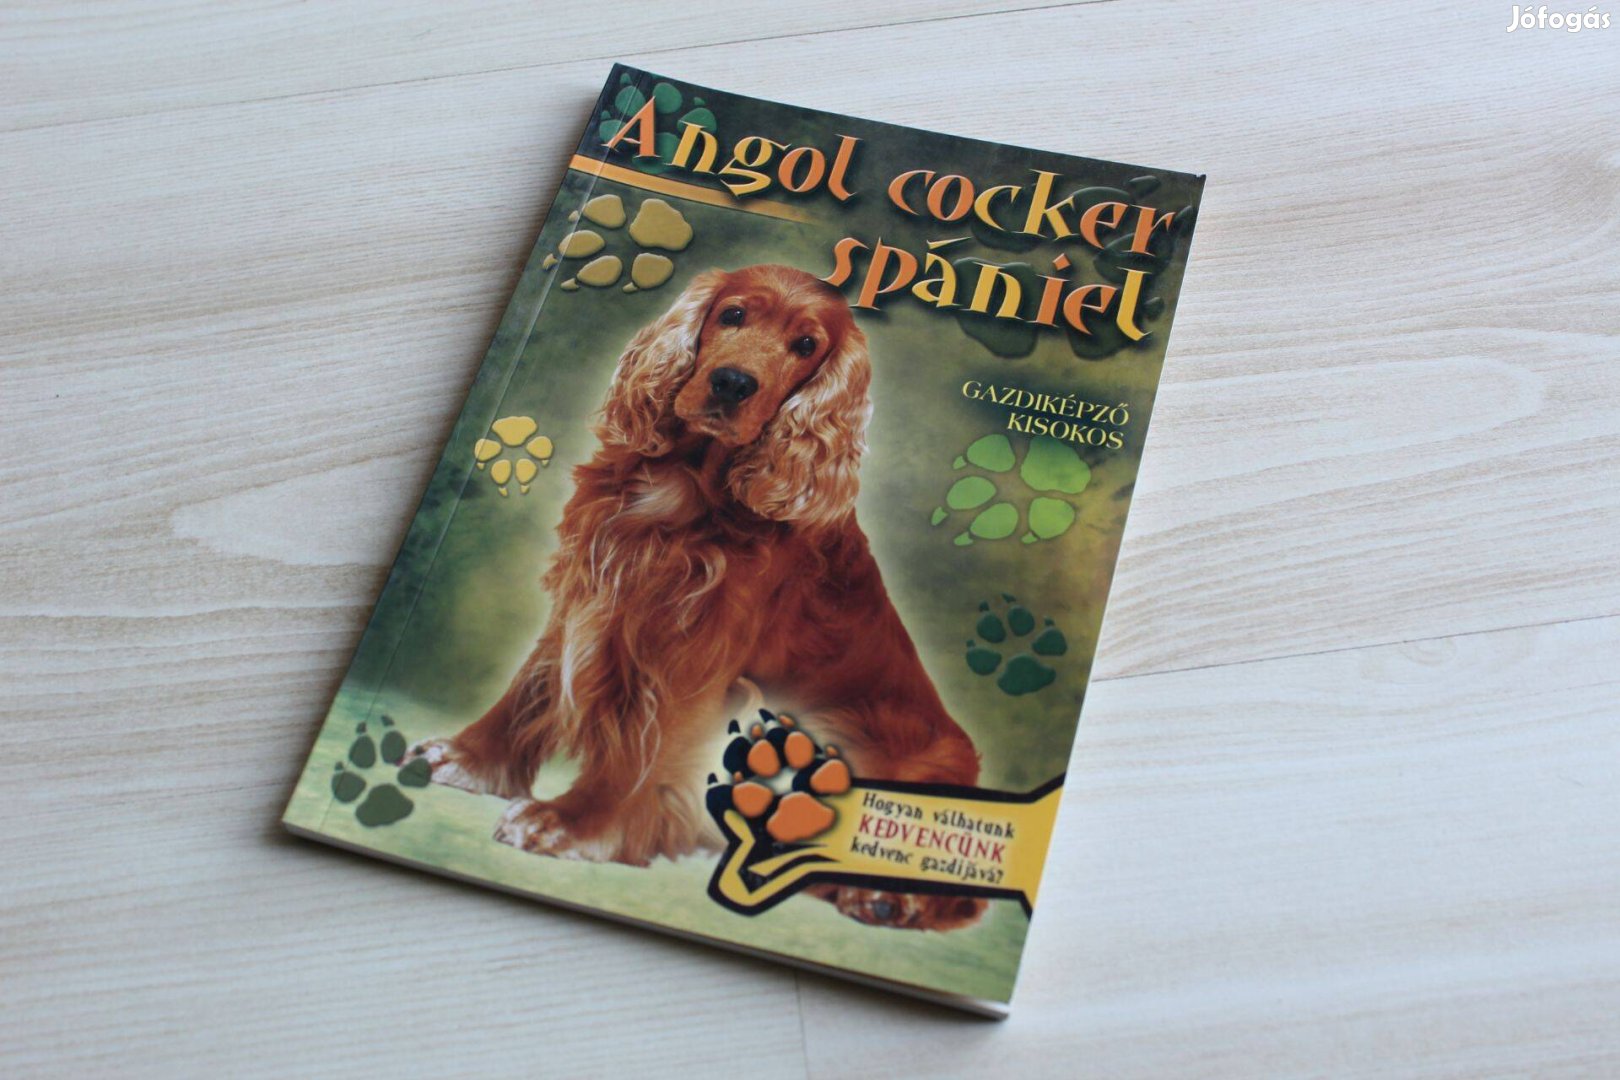 Állattartók kézikönyve - Gazdiképző kisokos Angol cocker spániel